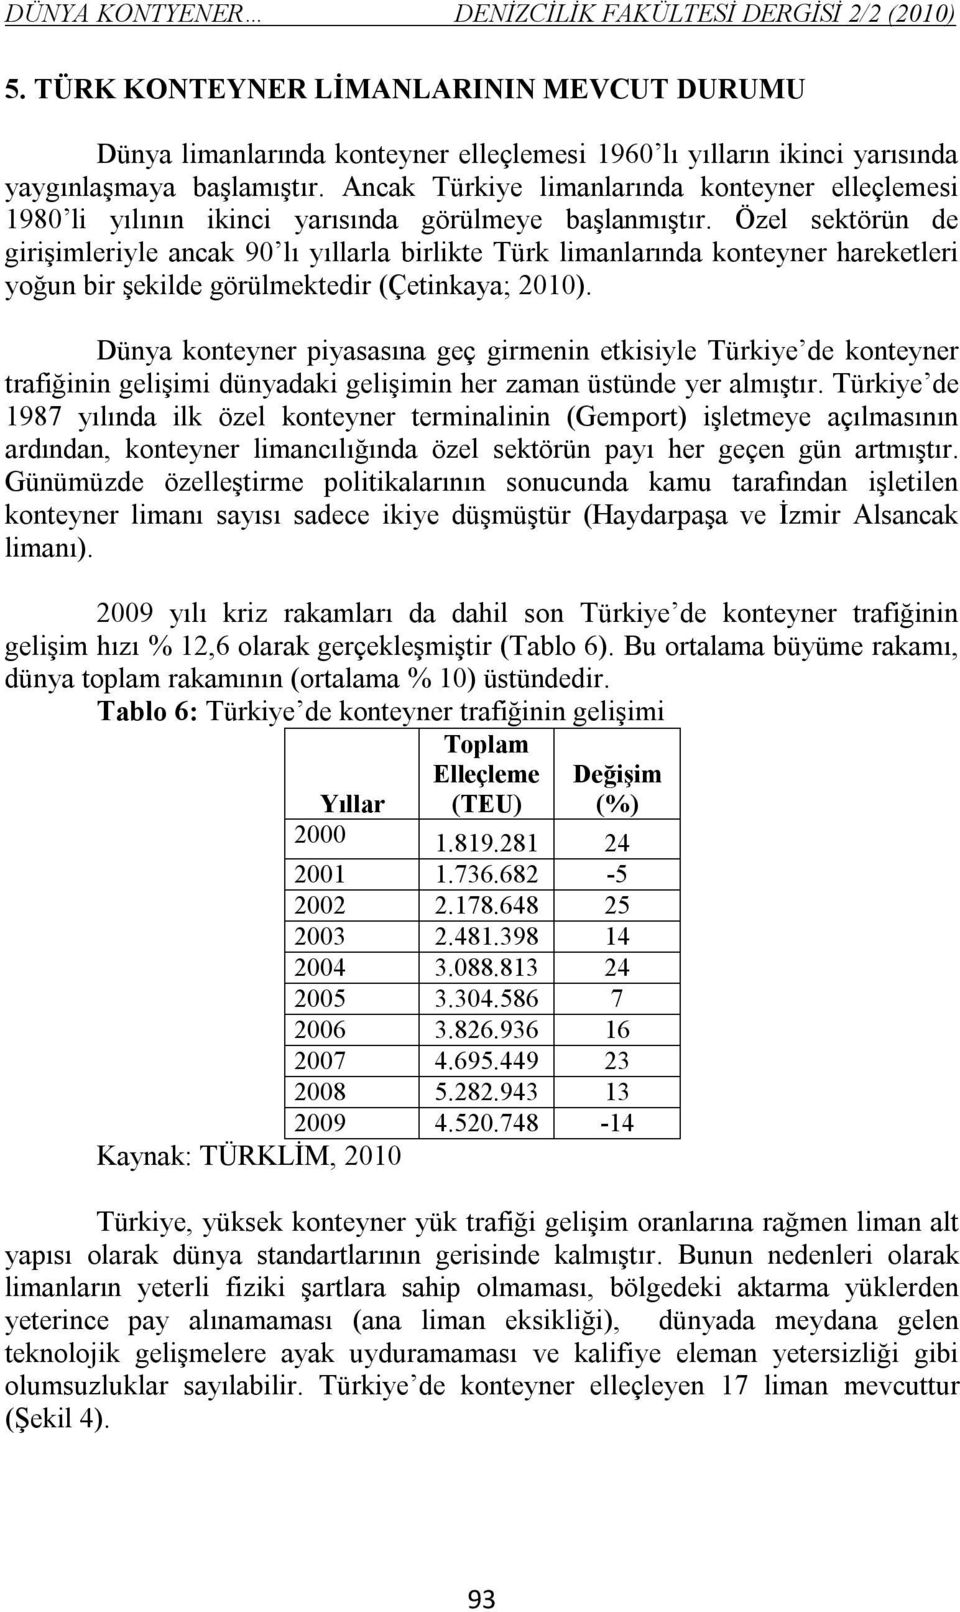 Ancak Türkiye limanlarında konteyner elleçlemesi 1980 li yılının ikinci yarısında görülmeye başlanmıştır.